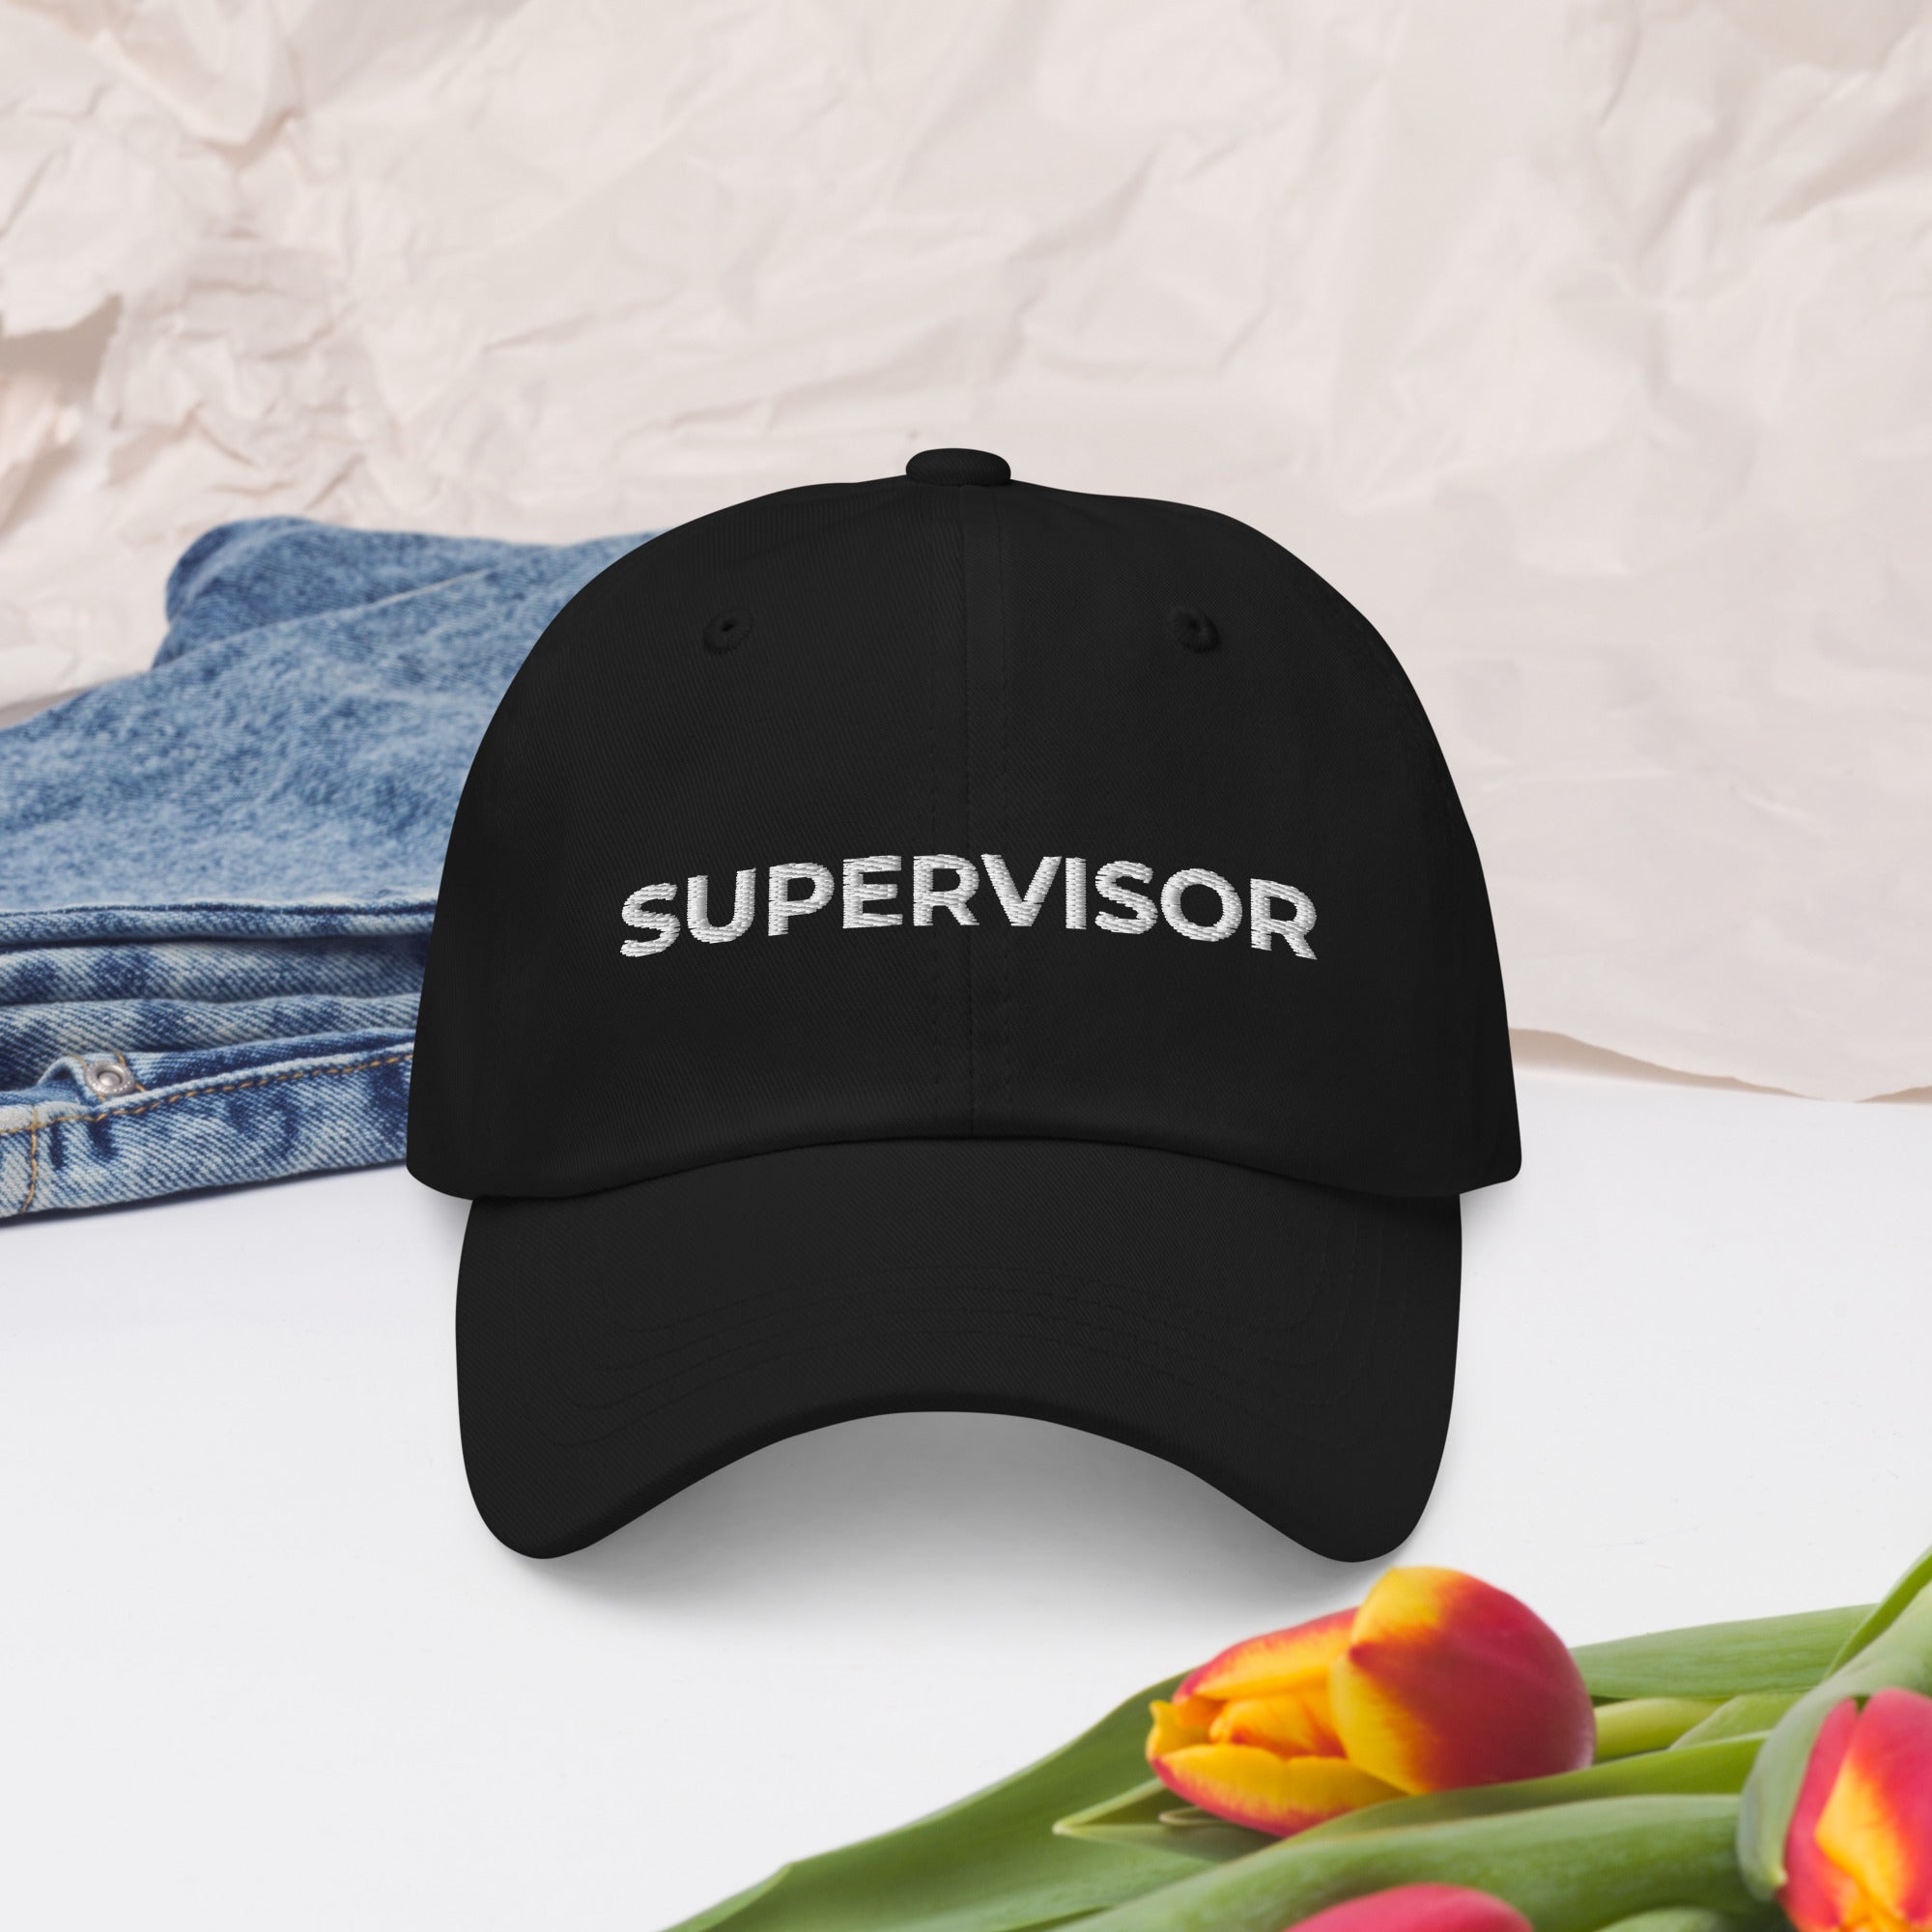 Sombrero de papá supervisor, regalo de supervisor, sombrero de supervisor, gorra de béisbol de supervisor, regalo divertido de supervisor, gorra de supervisor, sombrero de cumpleaños de supervisor